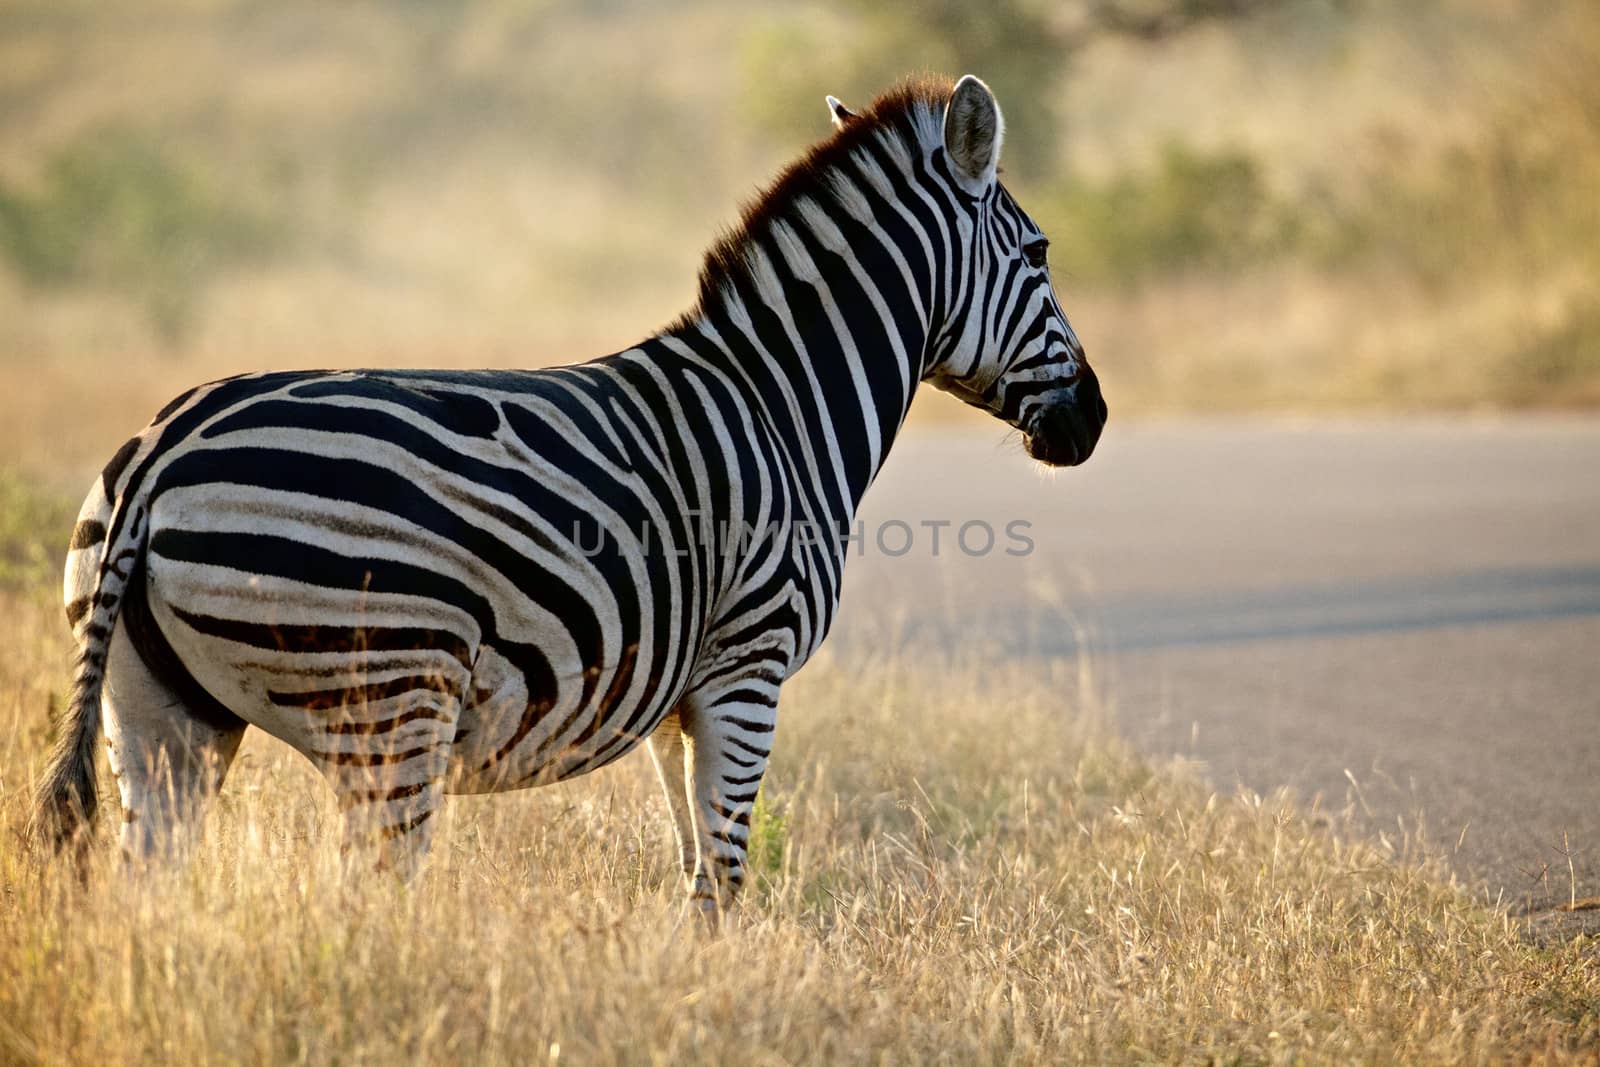 Zebra by instinia